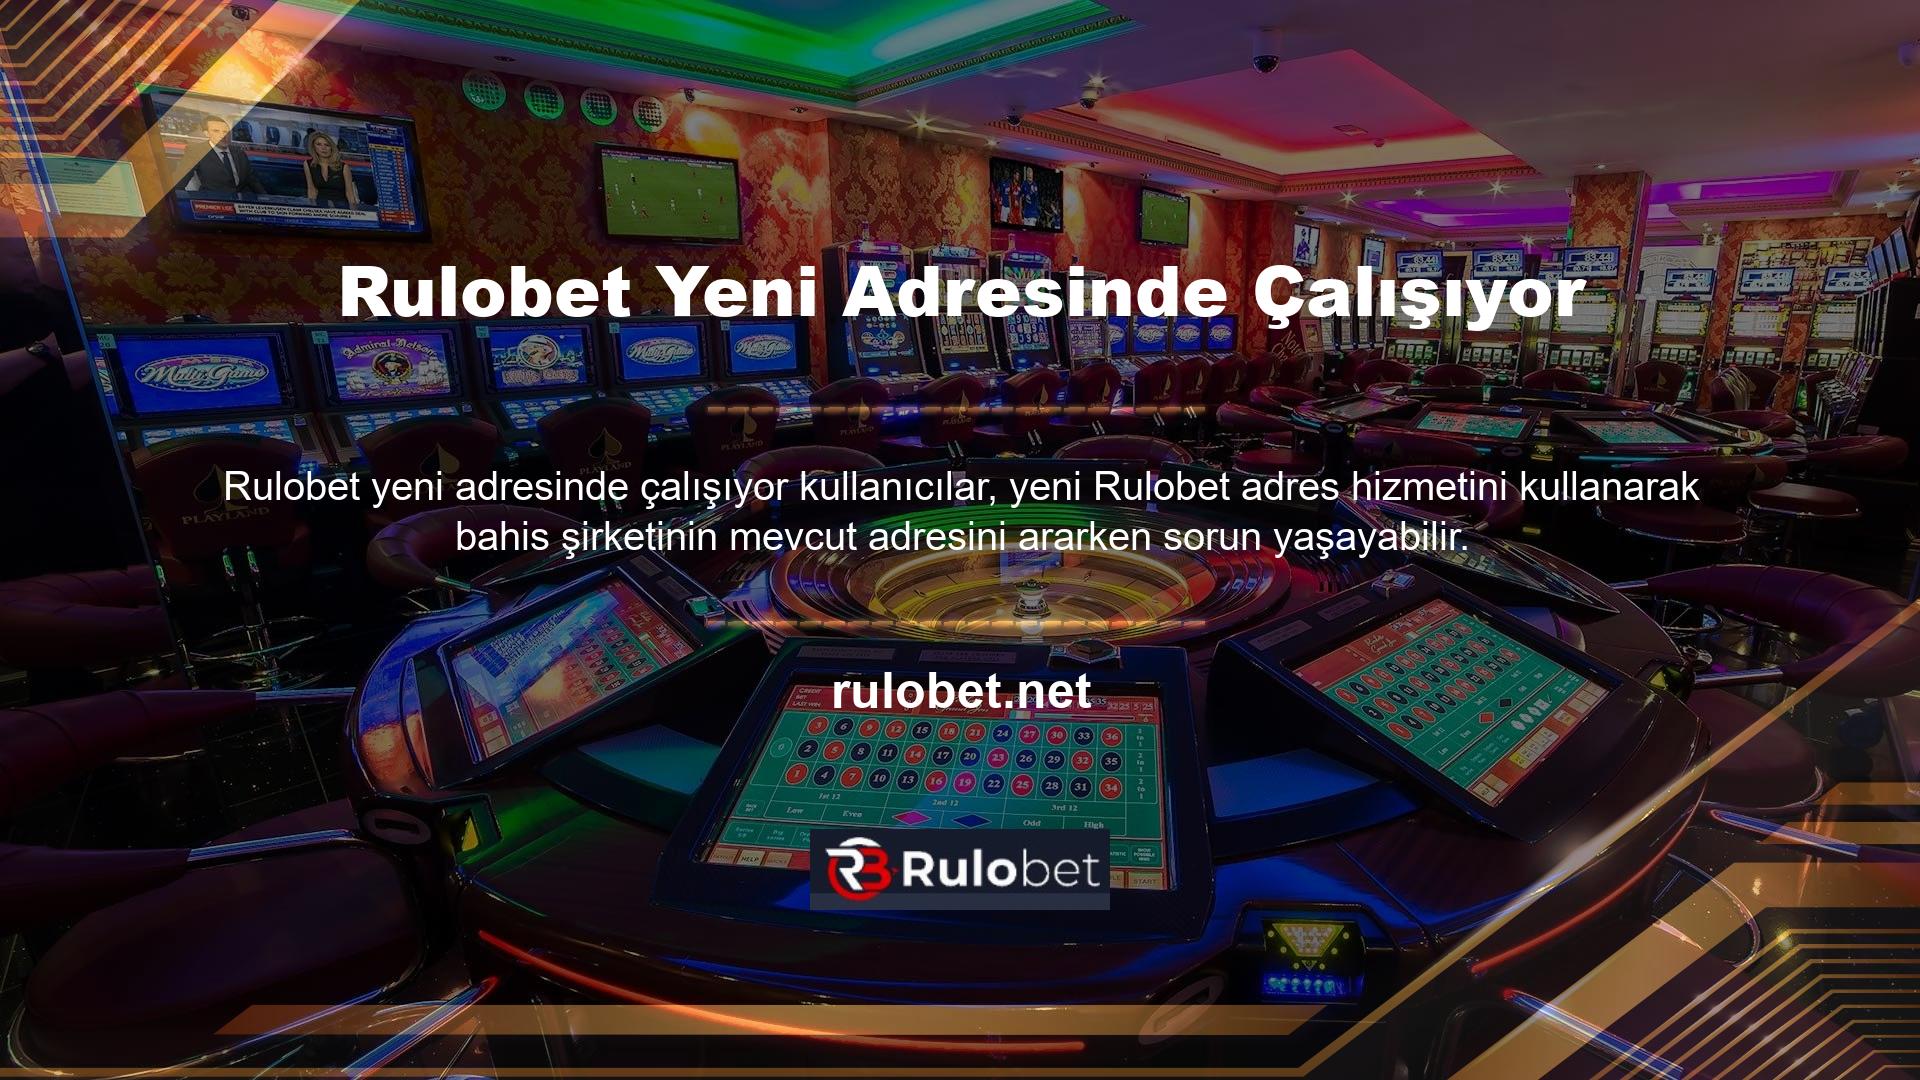 Oyunu oynama şansınızı ölçmek için Rulobet gibi güvenilir bir bahis sitesi de seçebilirsiniz